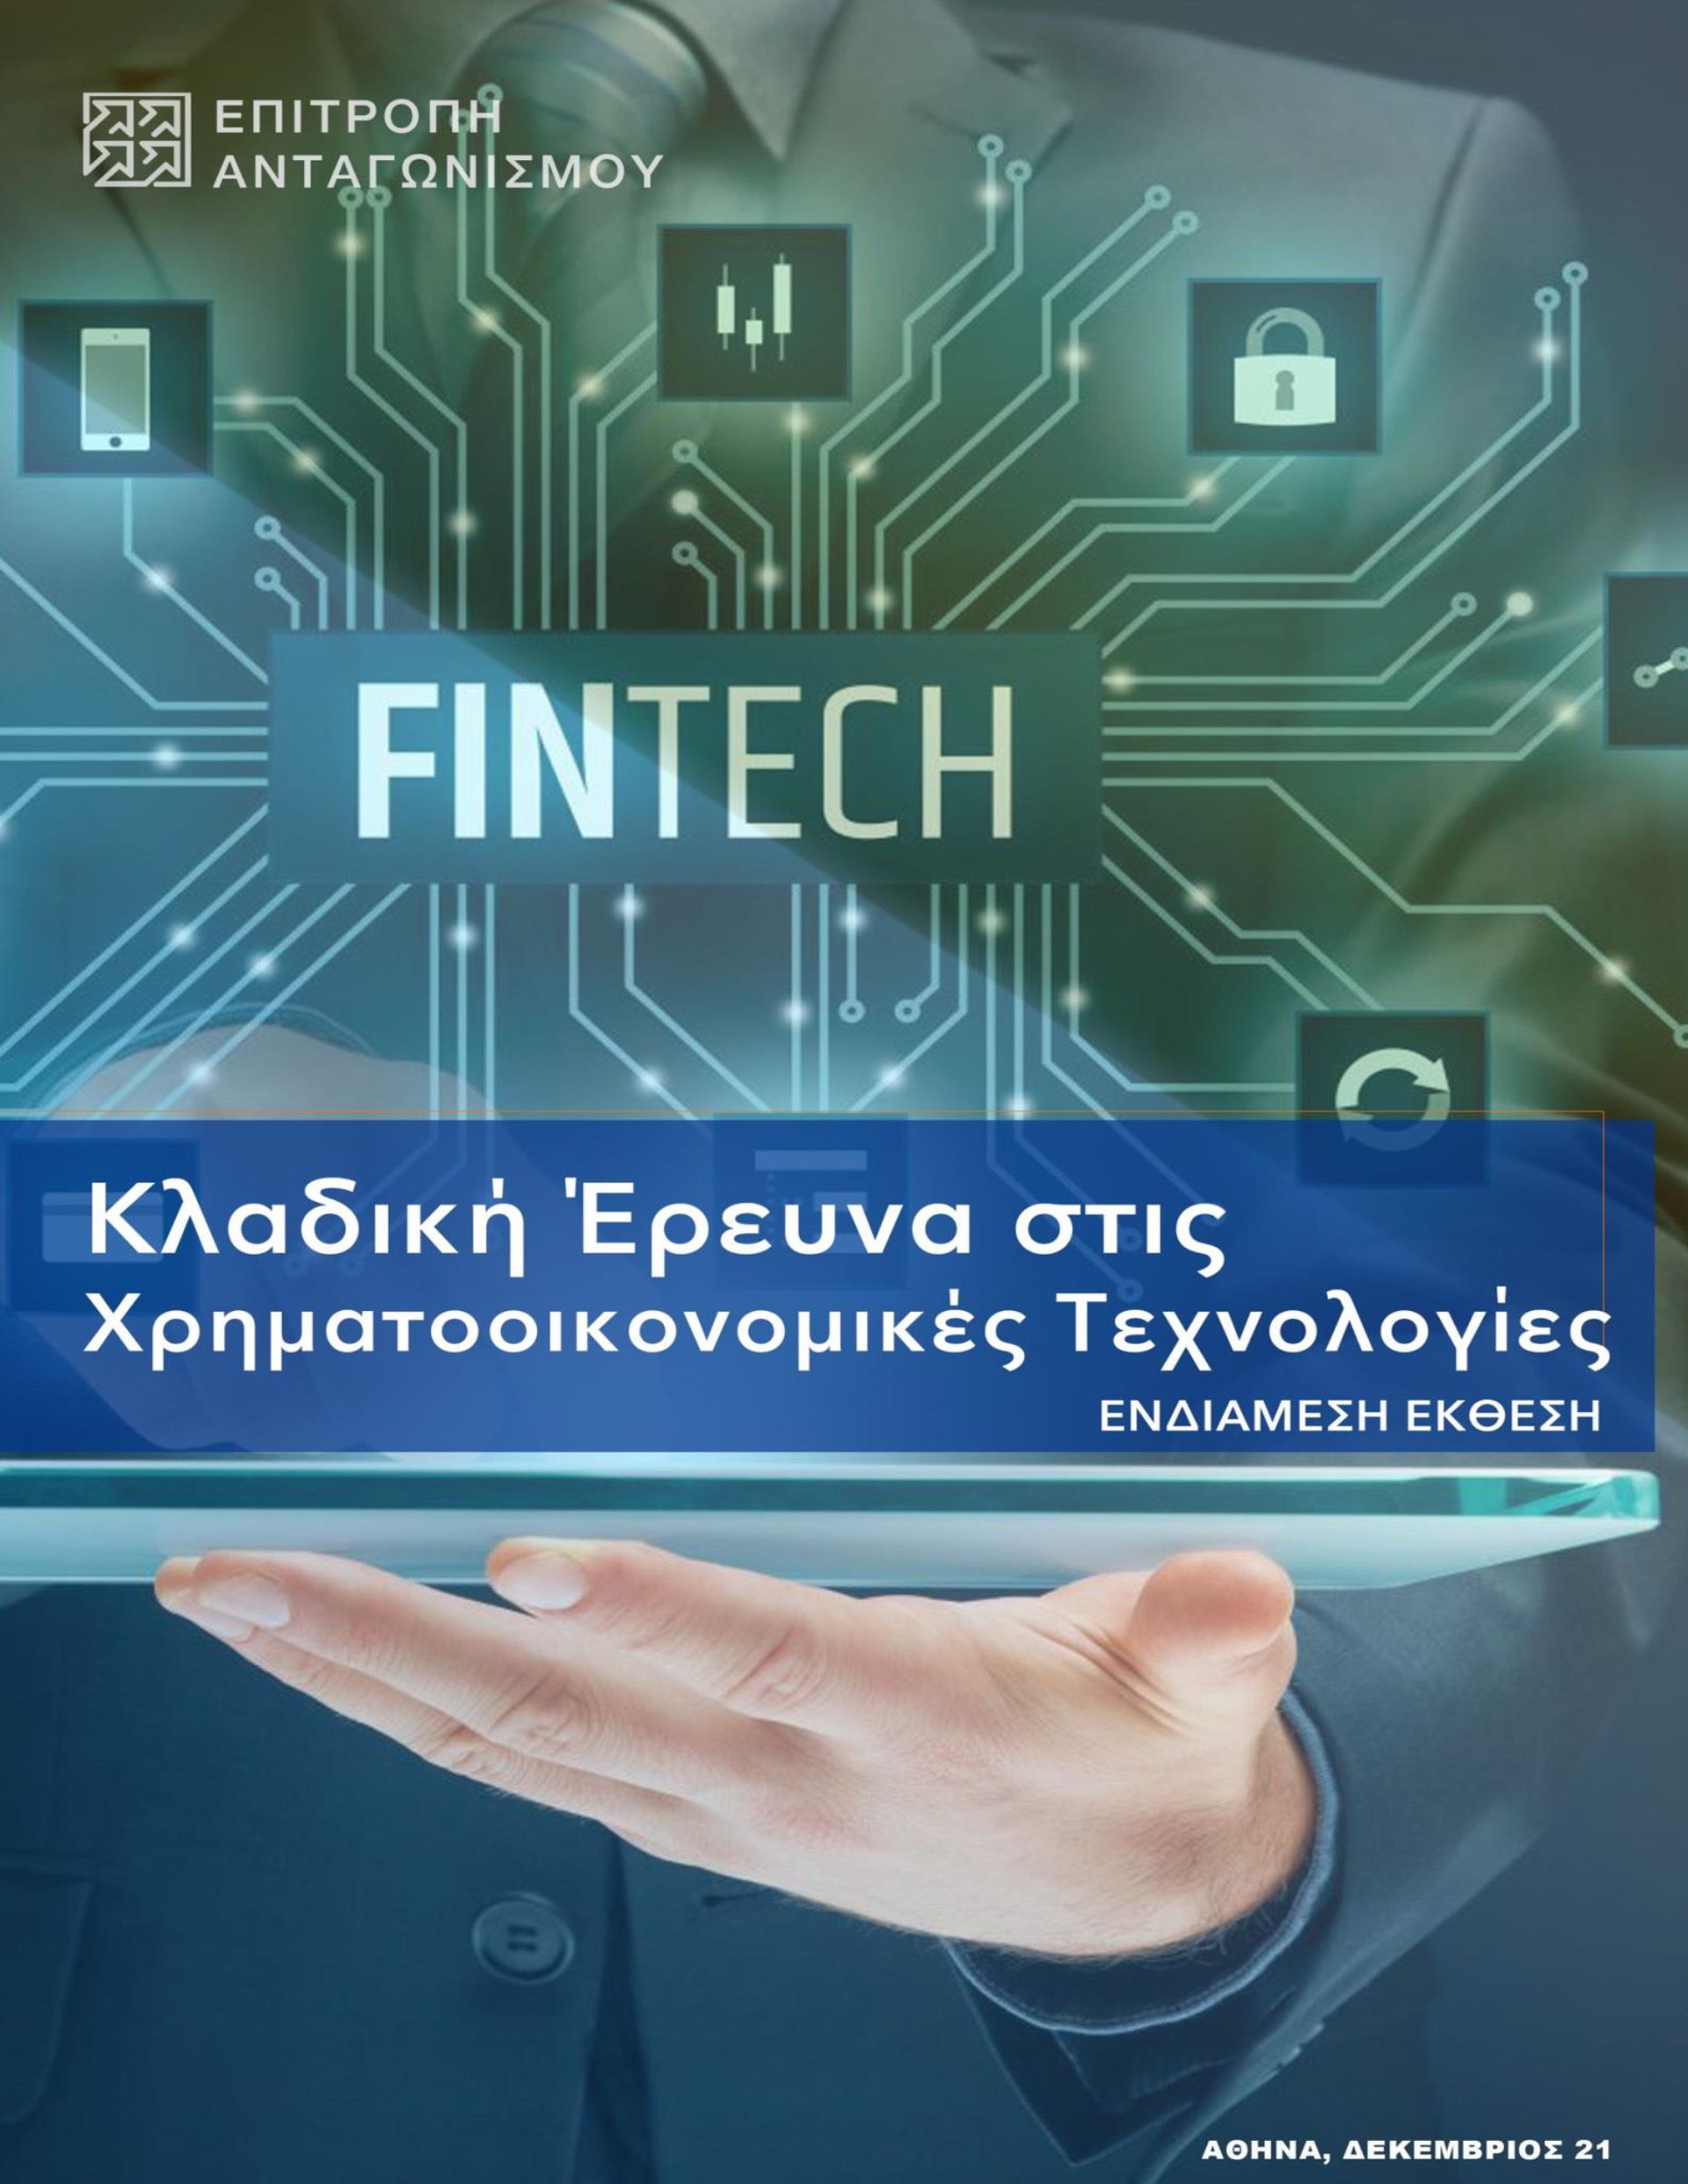 Ενδιάμεση Έκθεση κλαδικής έρευνας στις Χρηματοοικονομικές Τεχνολογίες (Fintech)